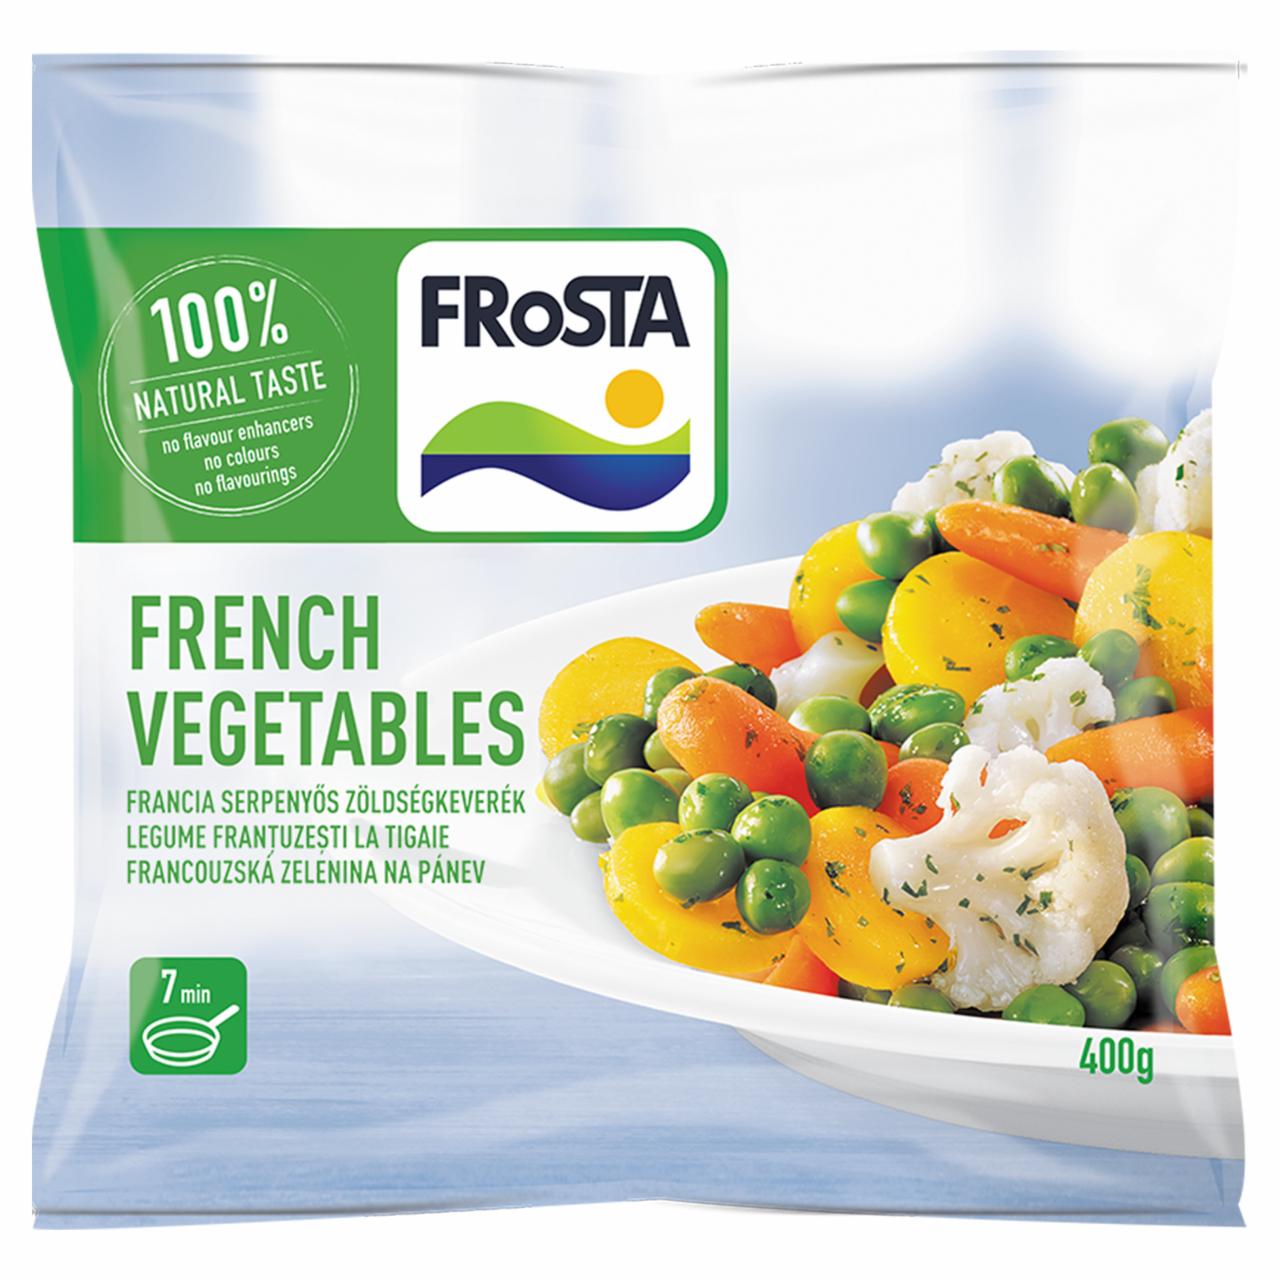 Képek - FRoSTA gyorsfagyasztott francia serpenyős zöldségkeverék 400 g